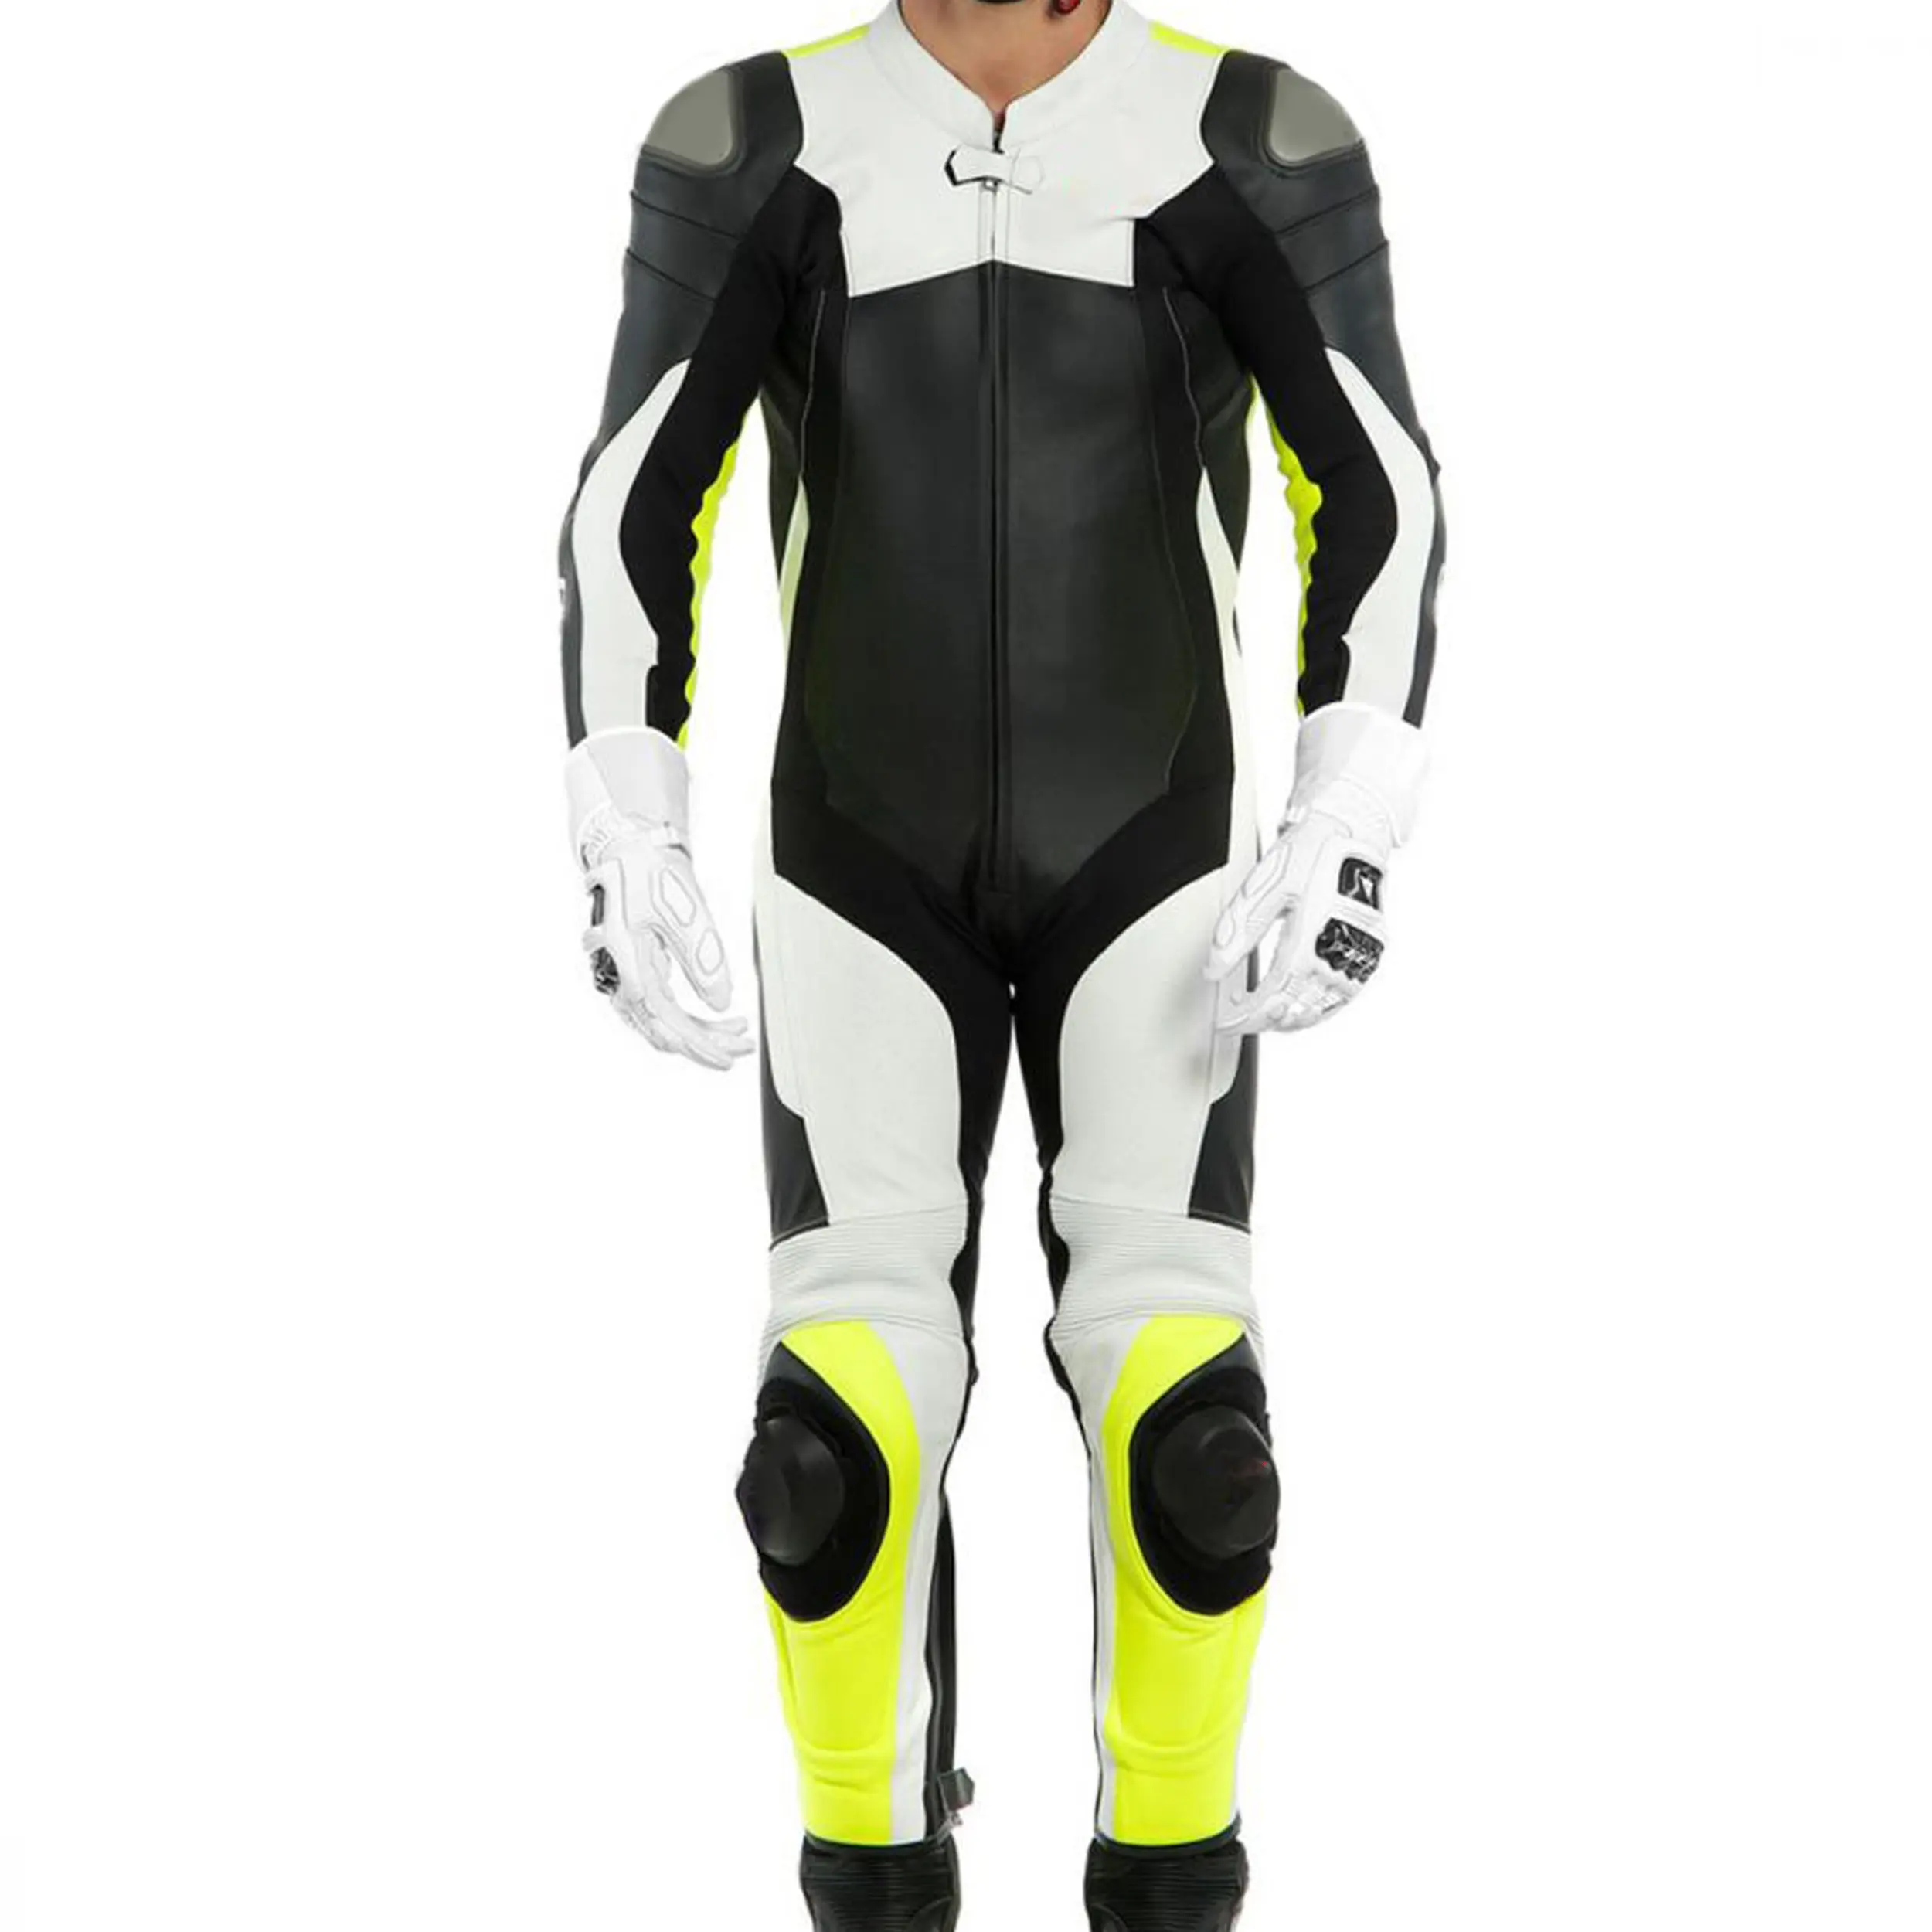 Traje de cuero para motocicleta, traje personalizado para carreras de motociclismo, de cuero